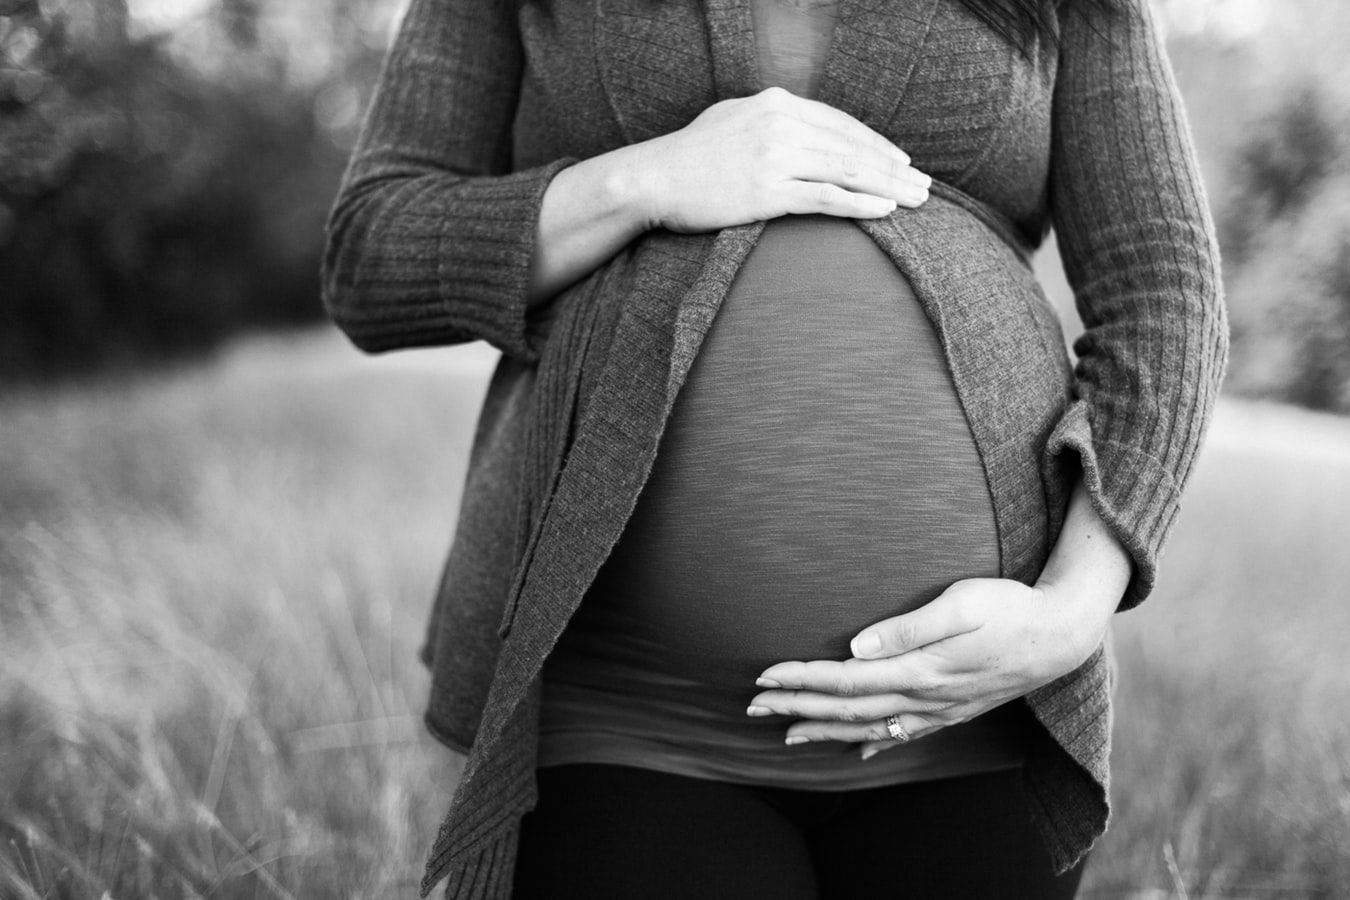 Σύμφωνα με τα δεδομένα μιας νέας έρευνας που διεξήχθη από το Πανεπιστήμιο του Λονδίνου «King's College», το μητρικό άγχος πριν και κατά τη διάρκεια της εγκυμοσύνης ενδέχεται να επηρεάζει την εγκεφαλική λειτουργία του βρέφους και να το καθιστά ευάλωτο στο άγχος, μελλοντικά.